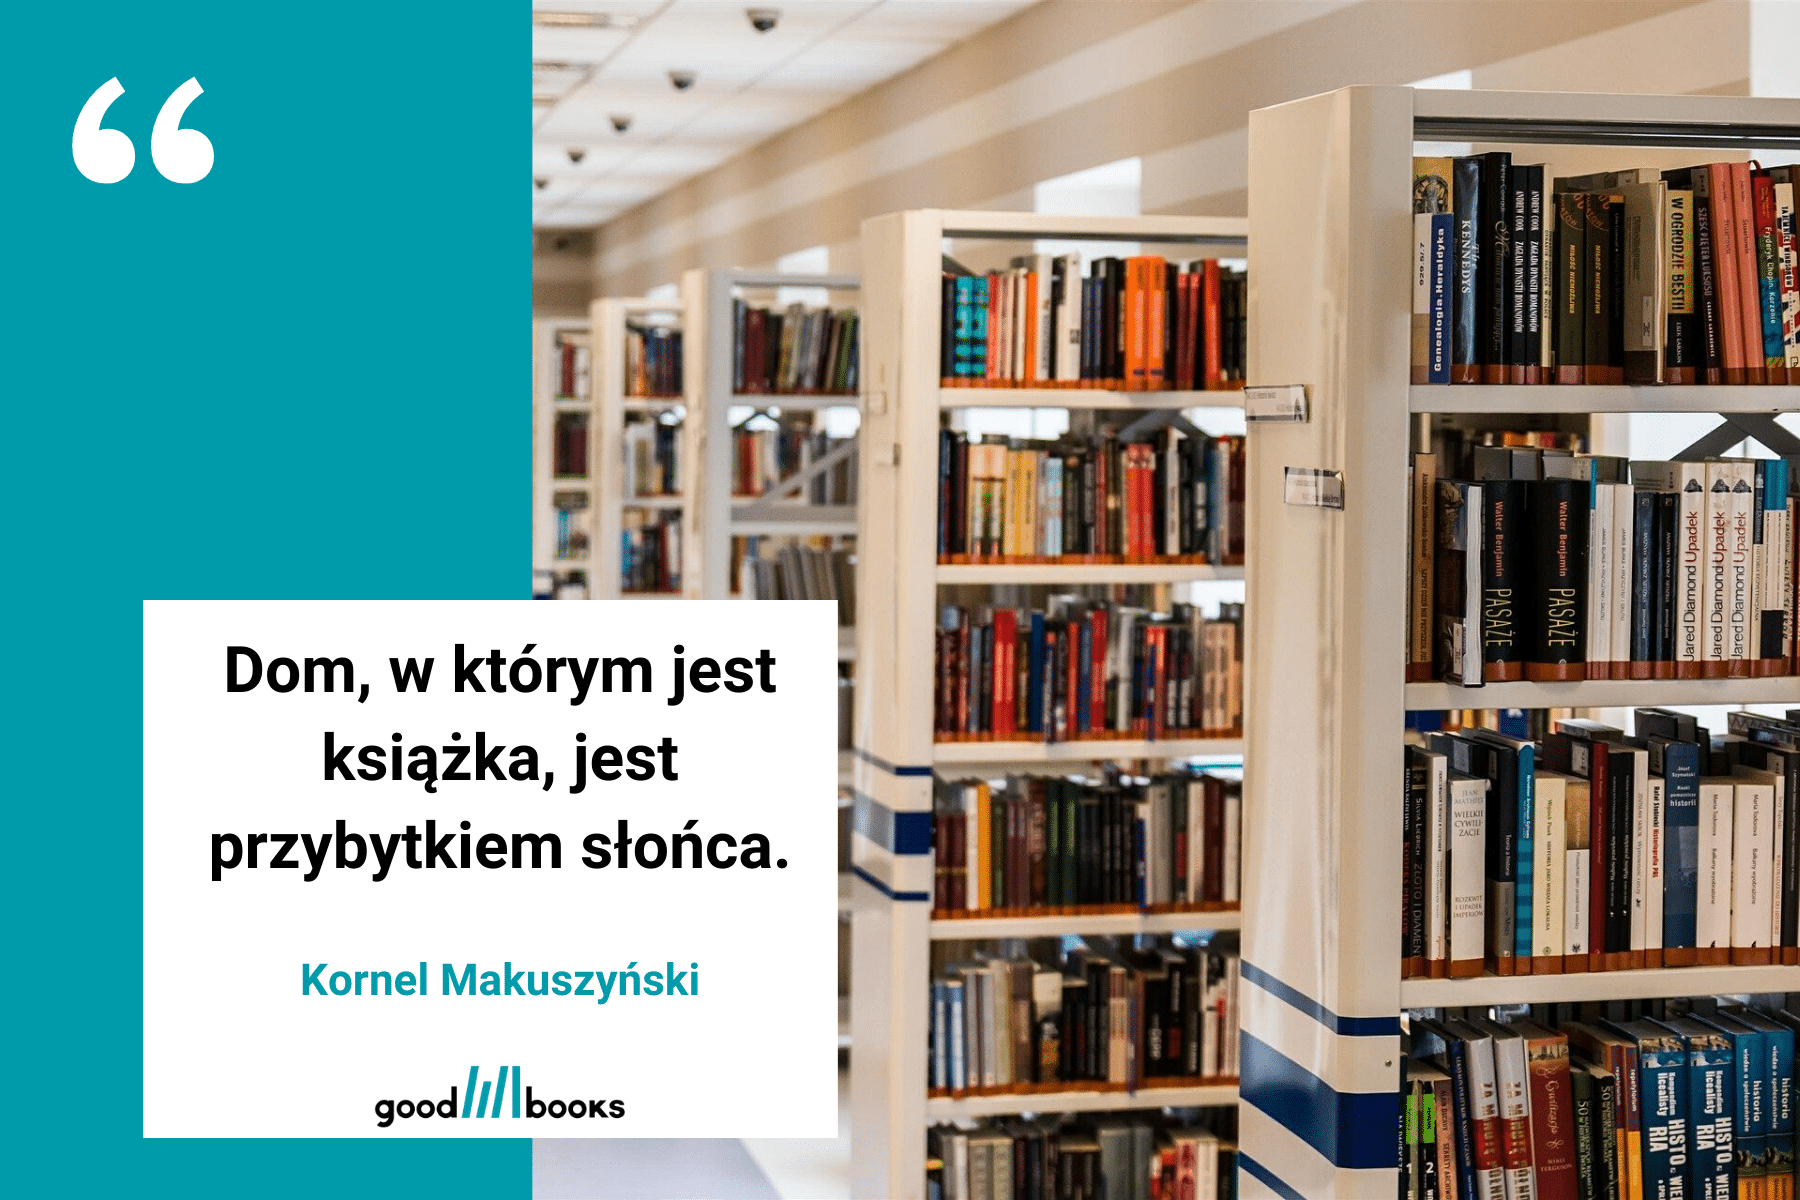 Cytat o bibliotece Kornela Makuszyńskiego Goodbooksowe memy.